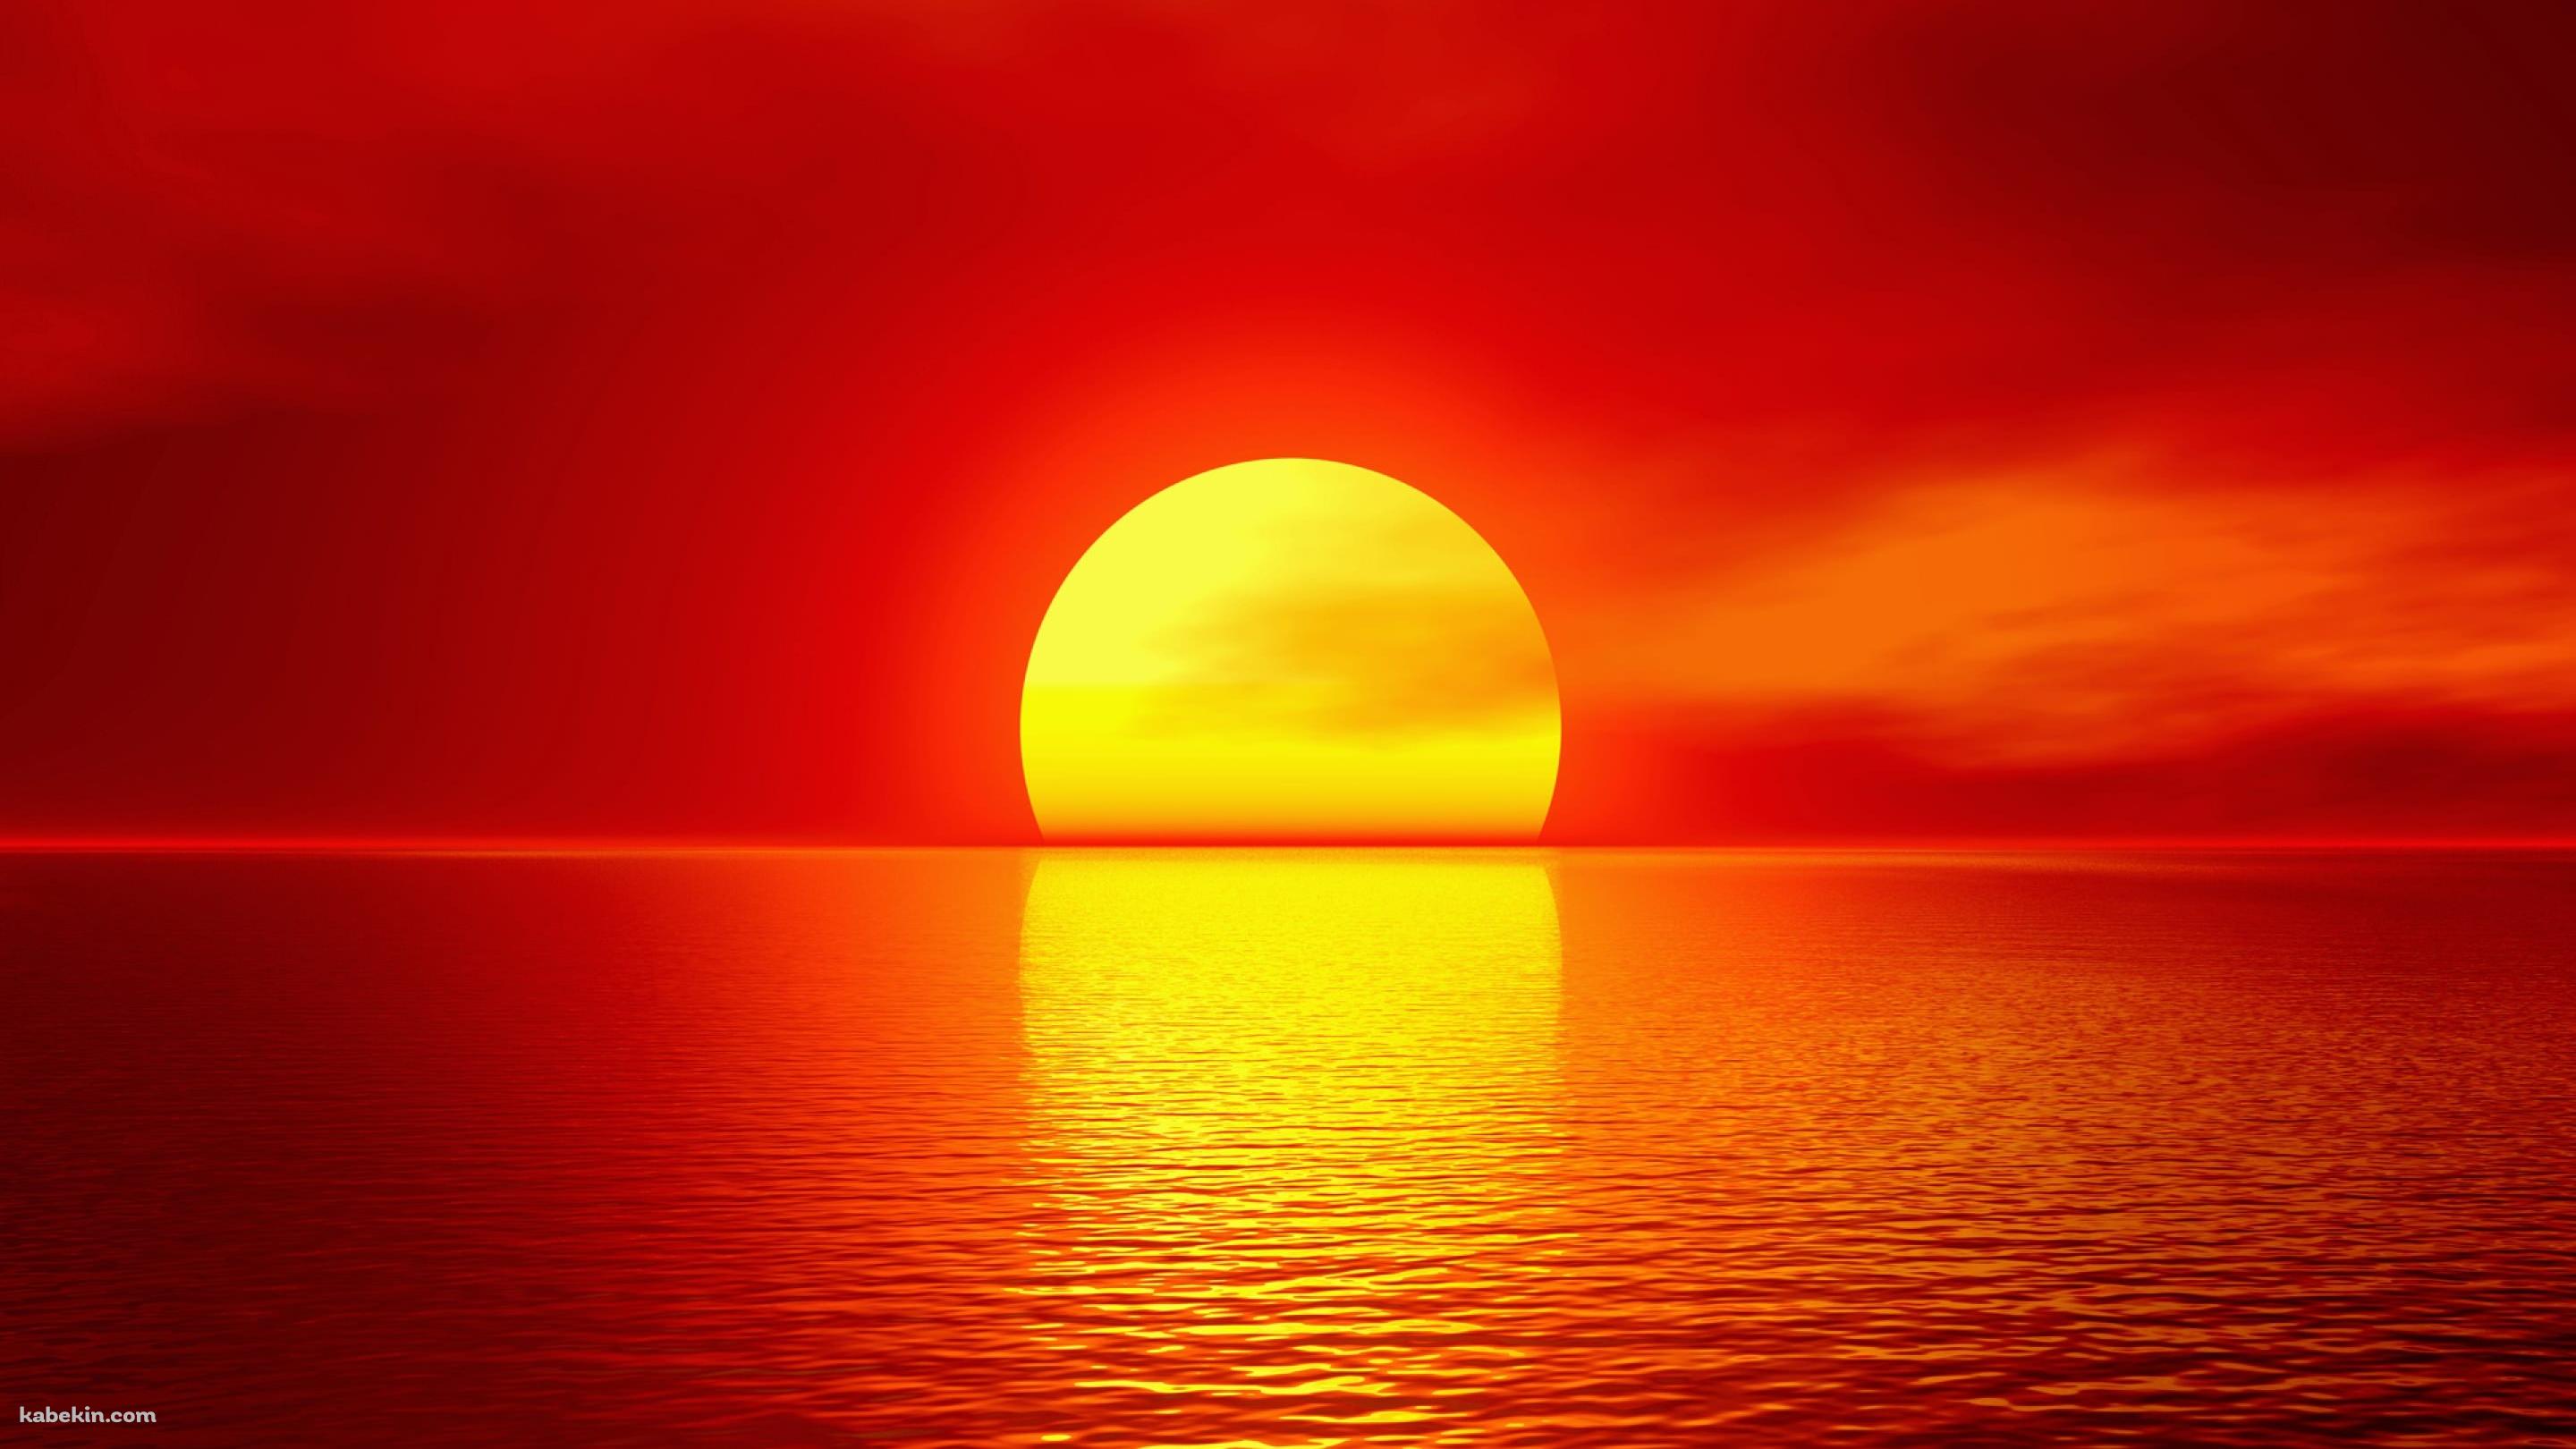 真っ赤な夕日の壁紙(2880px x 1620px) 高画質 PC・デスクトップ用